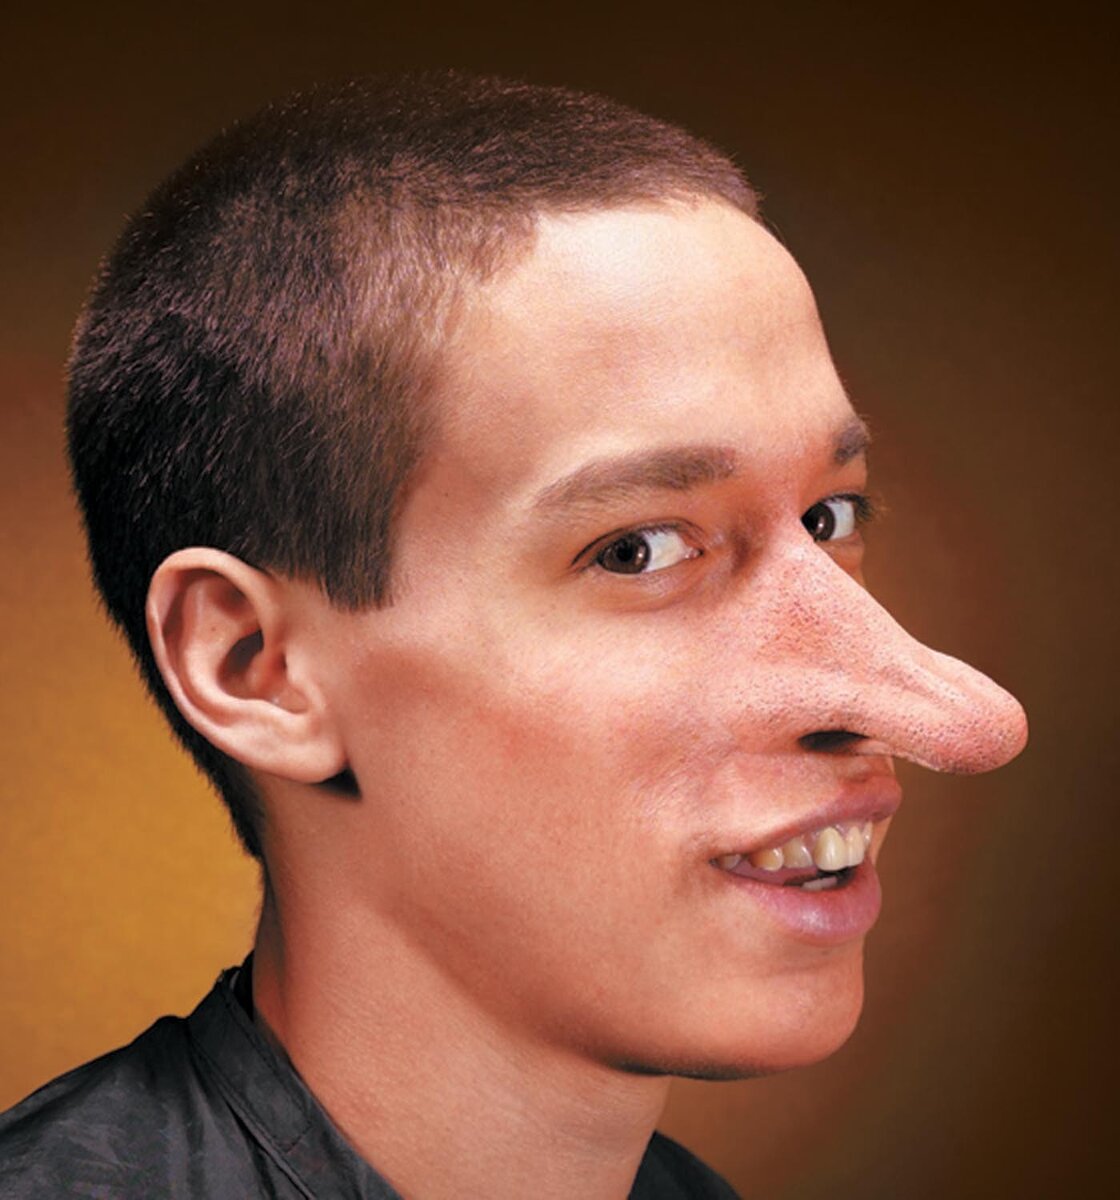 Фото людей с кривым носом